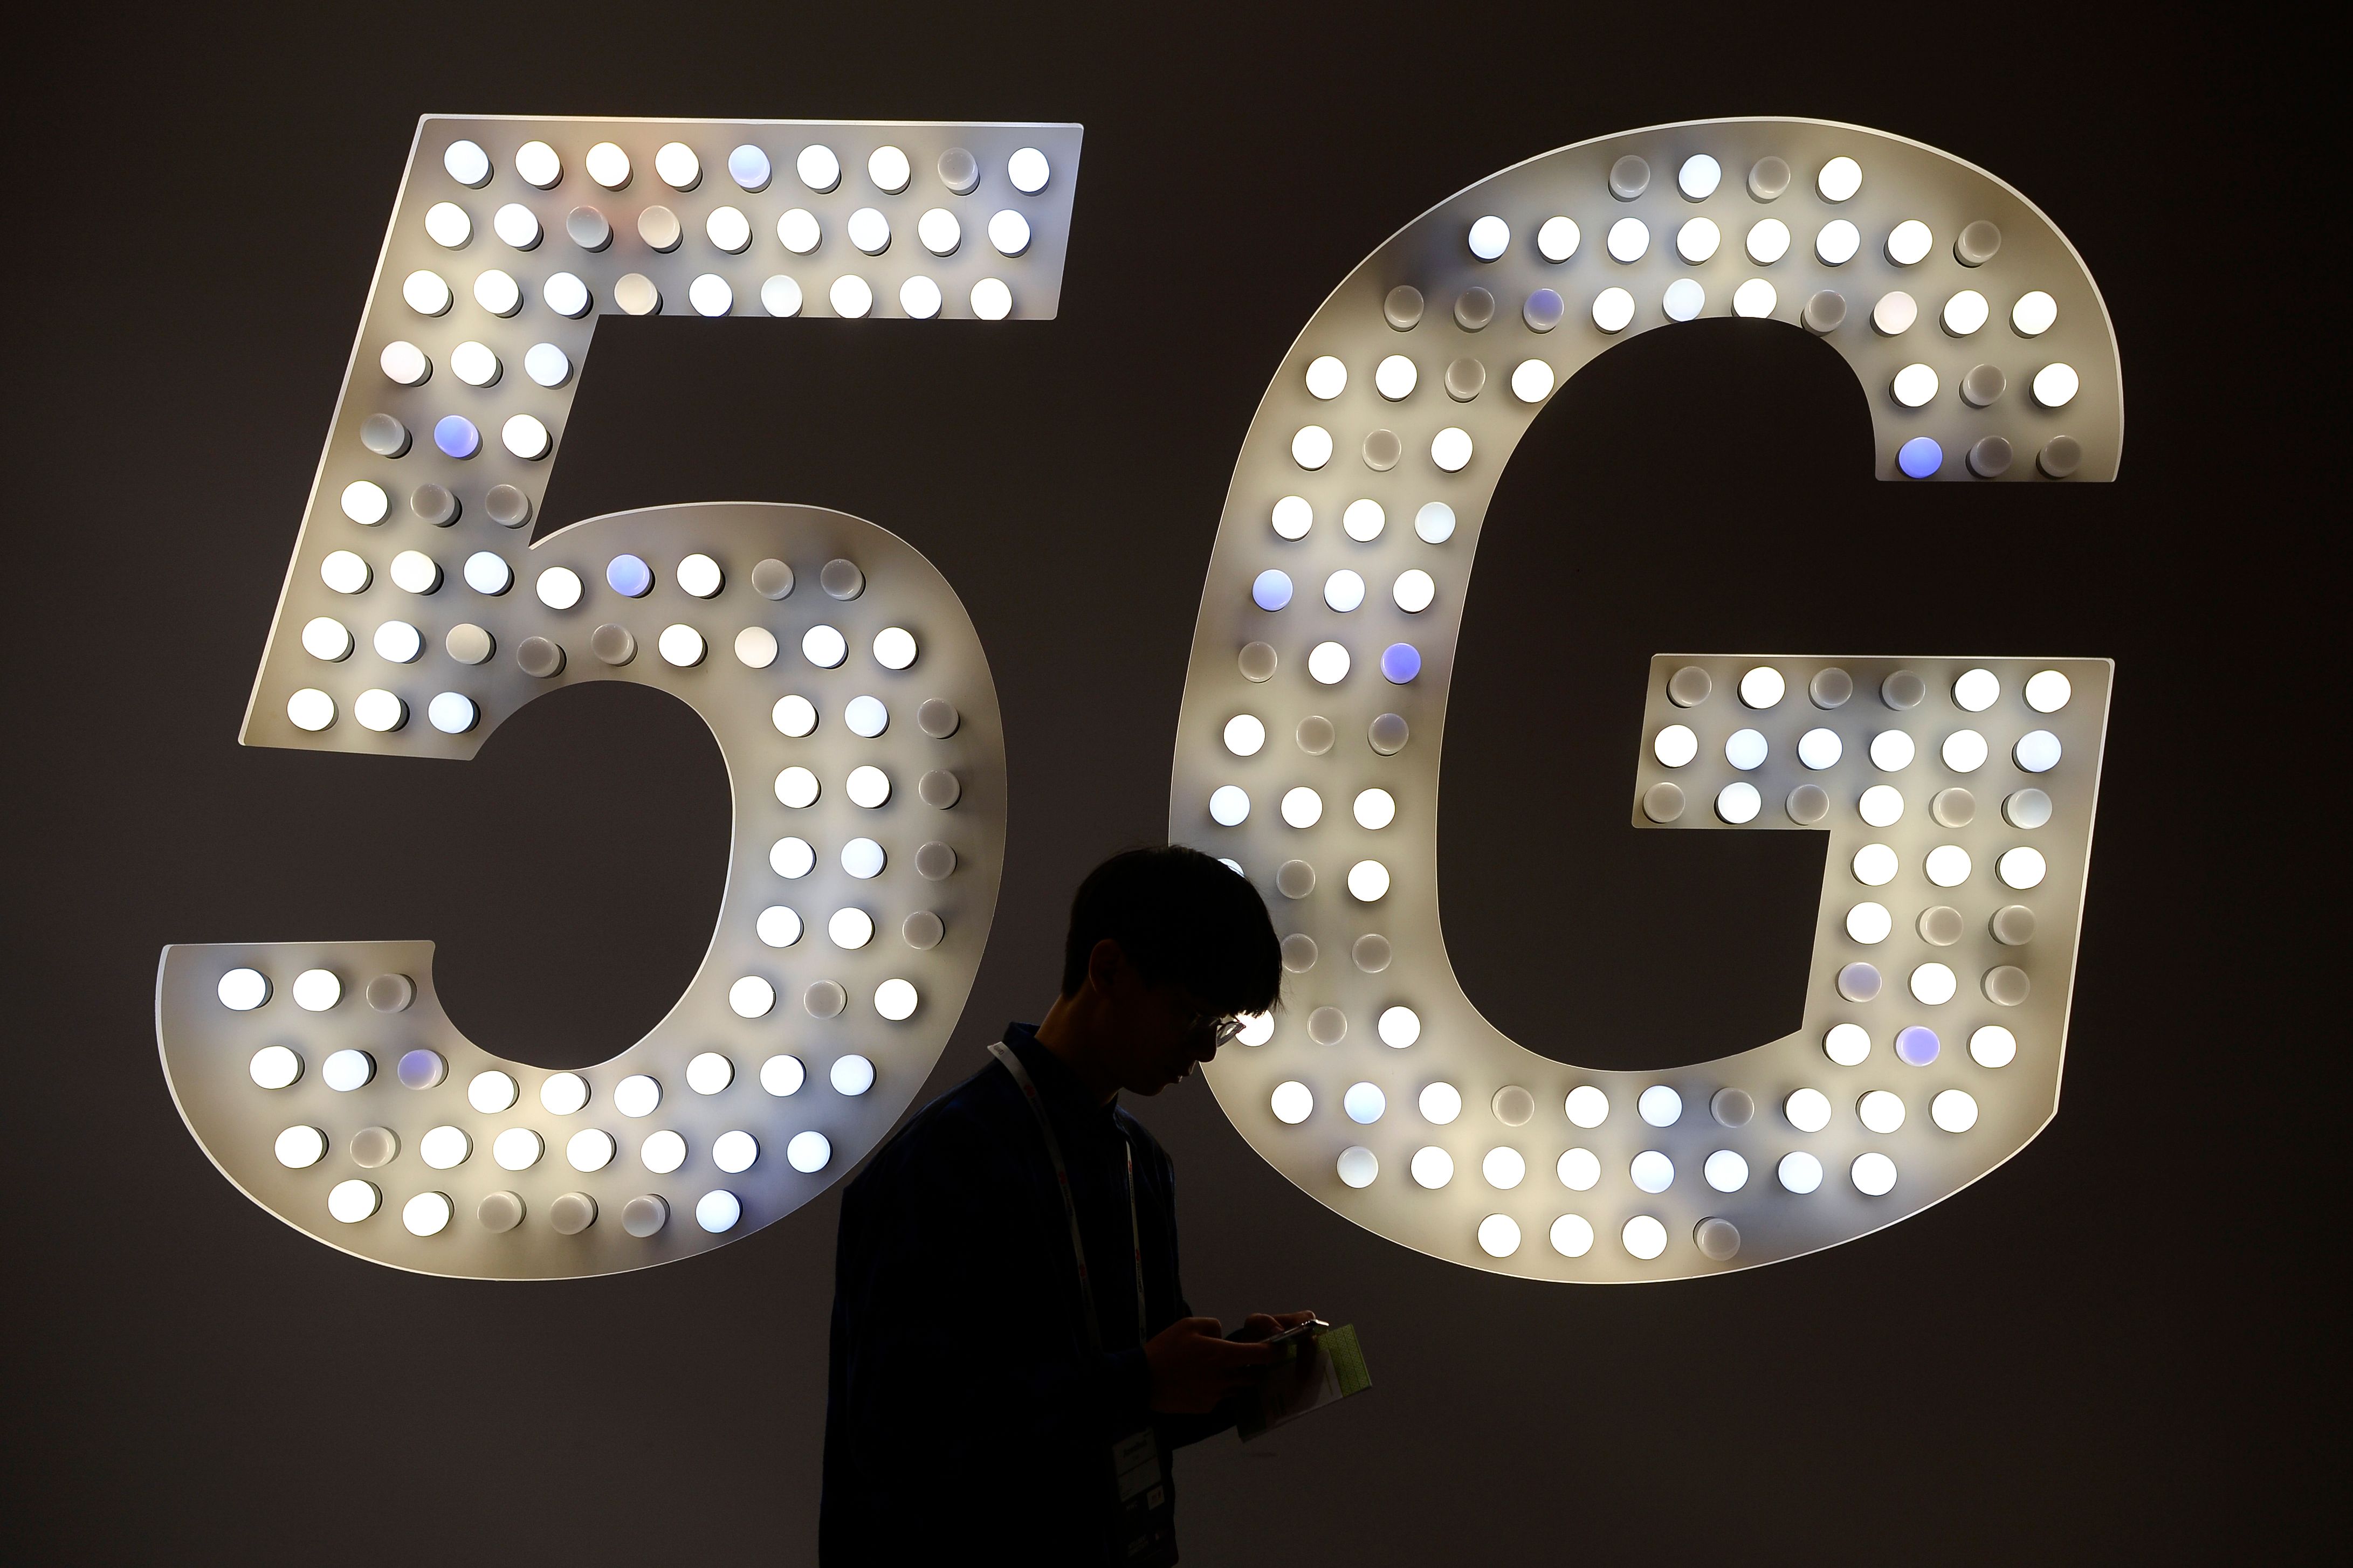 La tecnología 5G es esperada por los usuarios de smartphones. (Foto Prensa Libre: AFP)